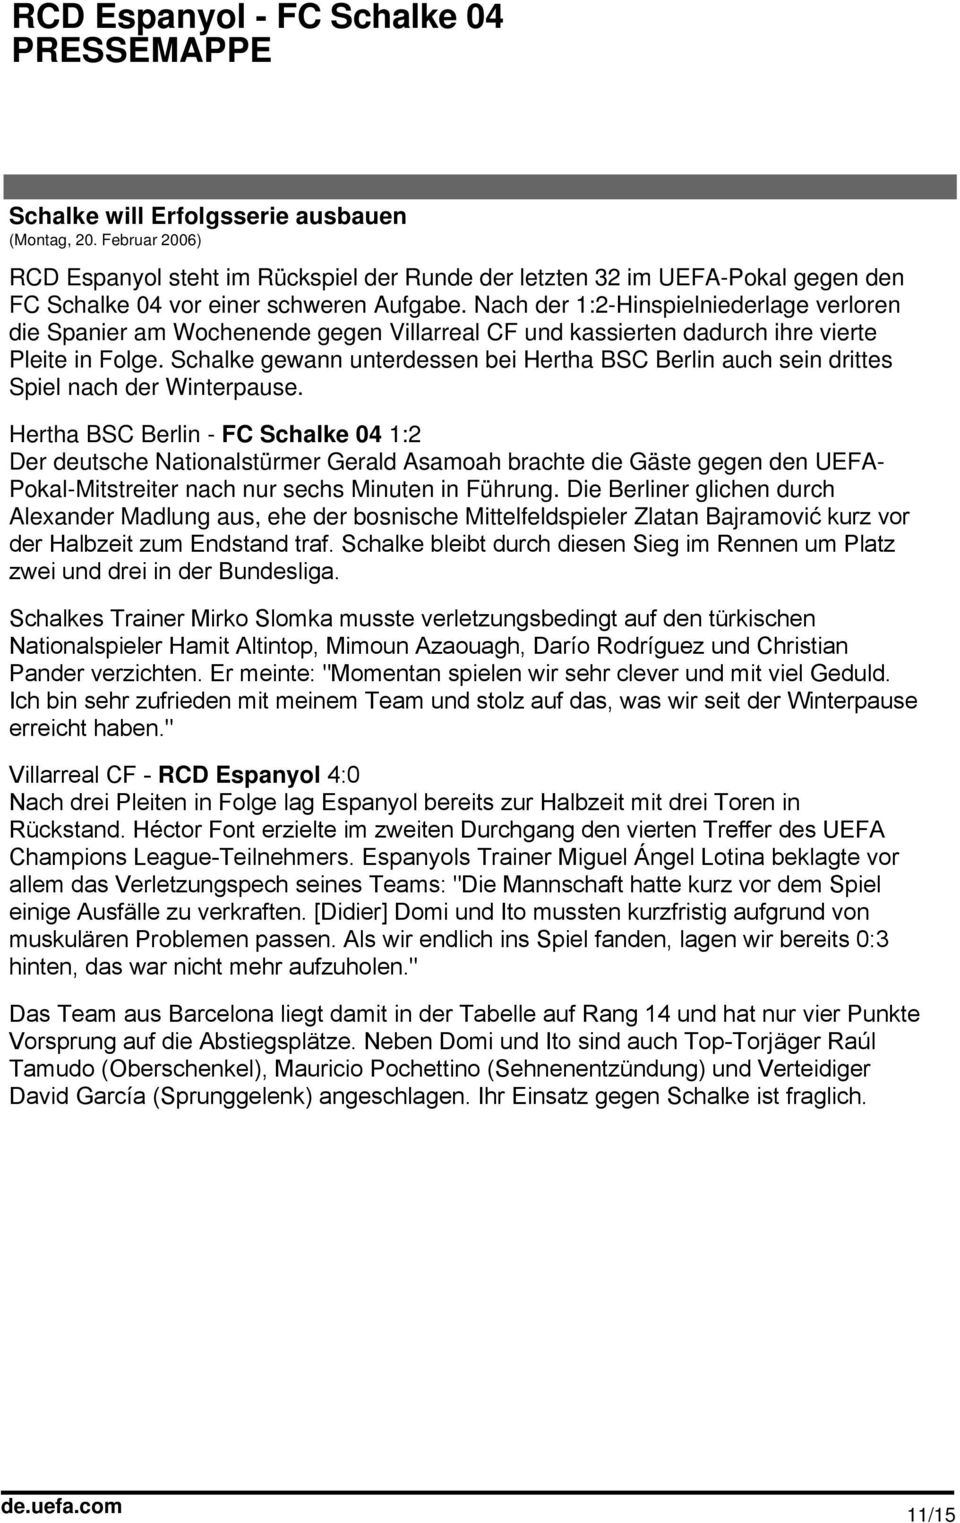 Schalke gewann unterdessen bei Hertha BSC Berlin auch sein drittes Spiel nach der Winterpause.